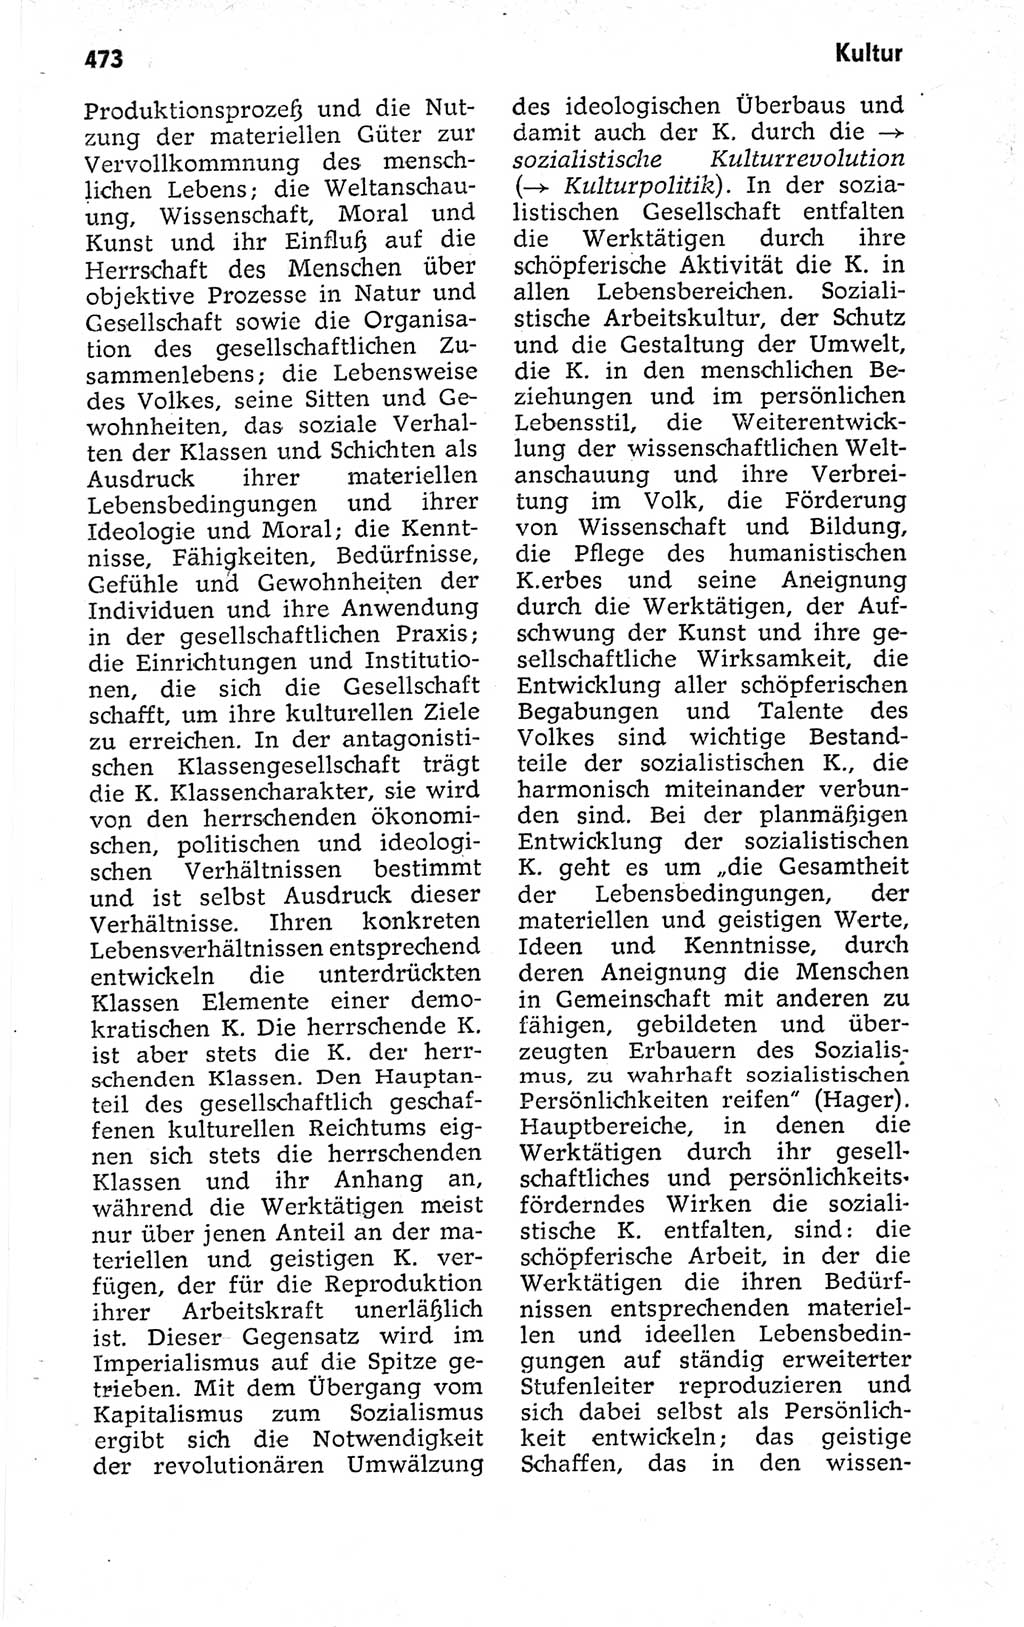 Kleines politisches Wörterbuch [Deutsche Demokratische Republik (DDR)] 1973, Seite 473 (Kl. pol. Wb. DDR 1973, S. 473)